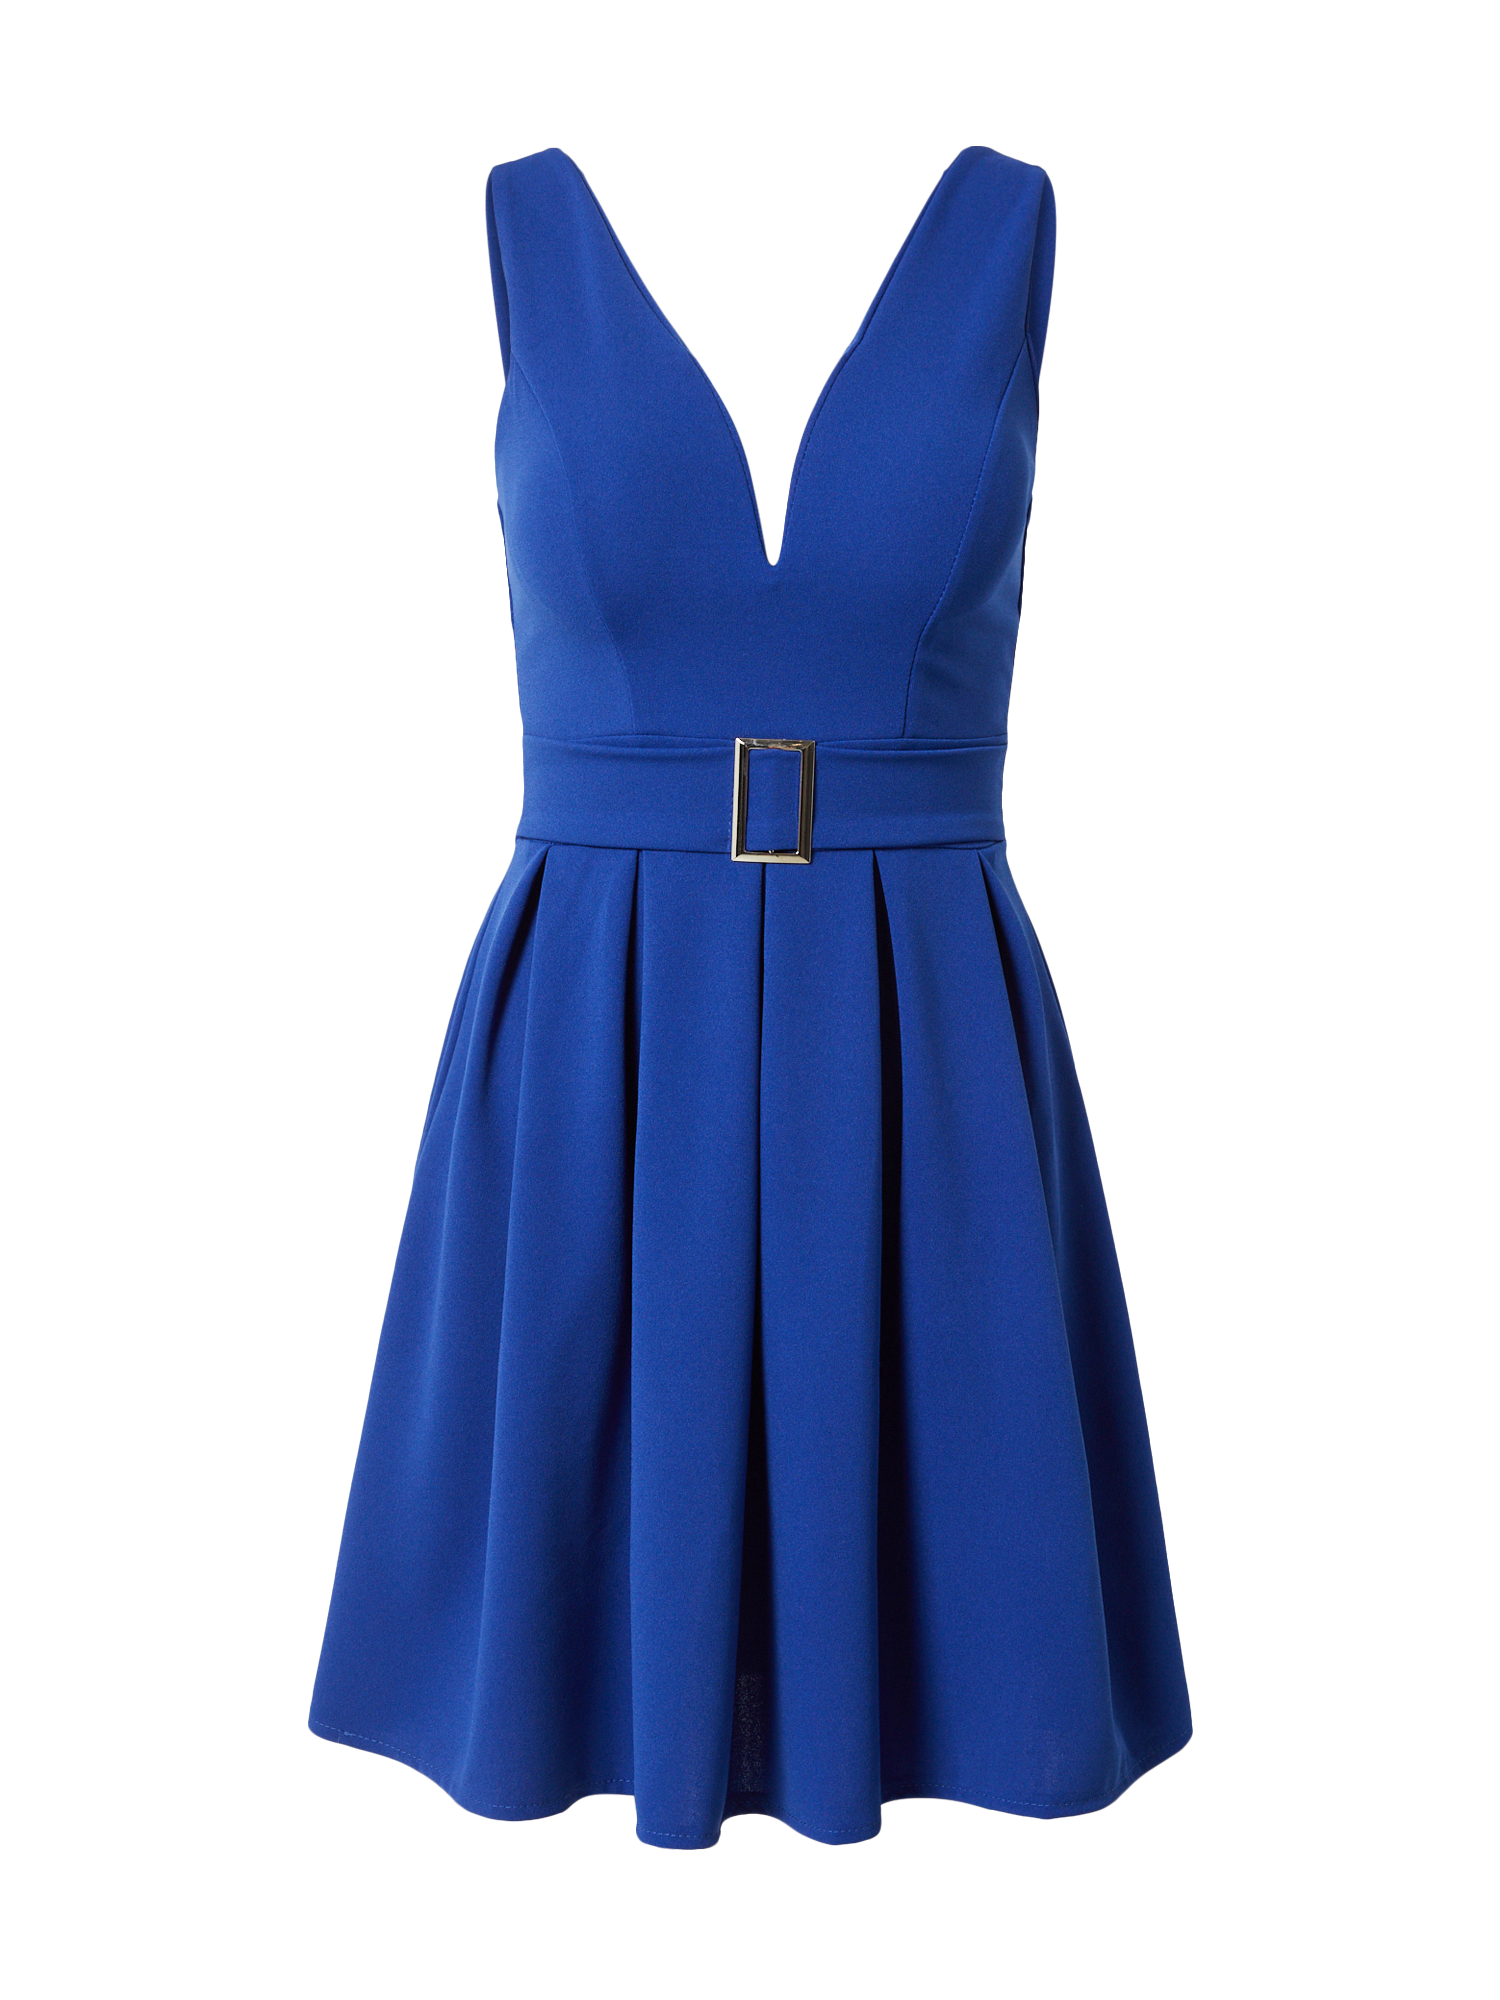 Odzież Sukienki WAL G. Sukienka DEBBIE w kolorze Królewski Błękitm 